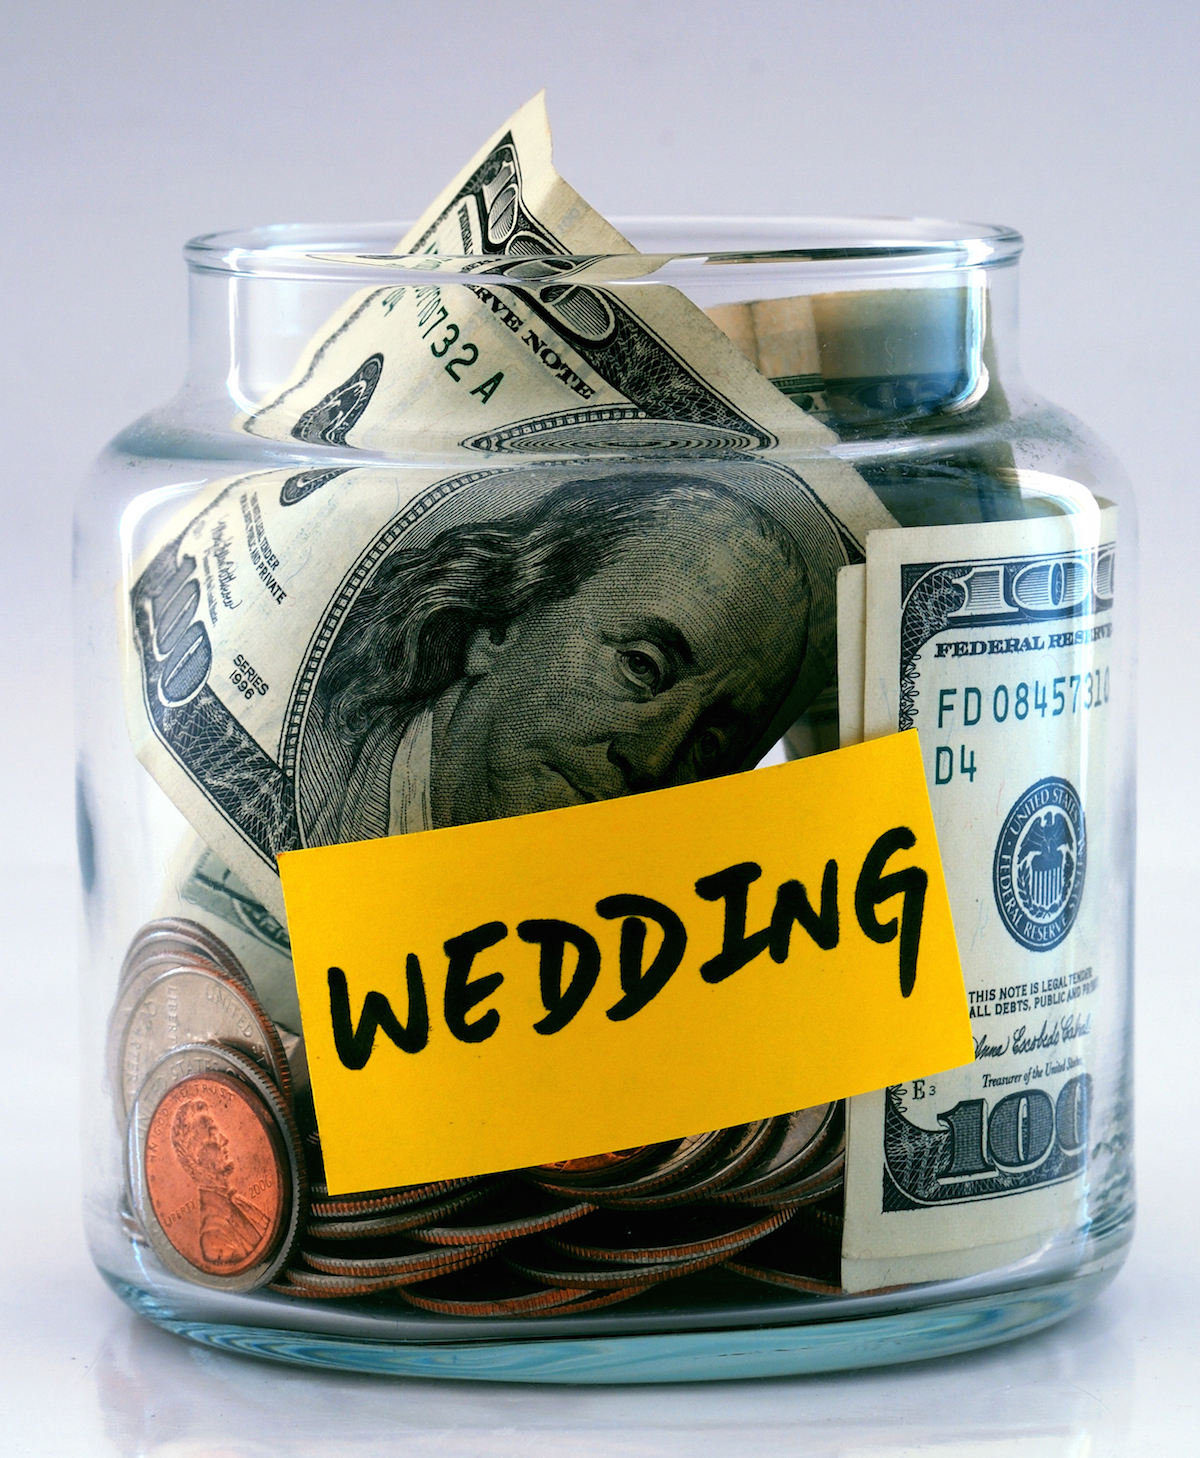 Wedding fund photo via Shutterstock